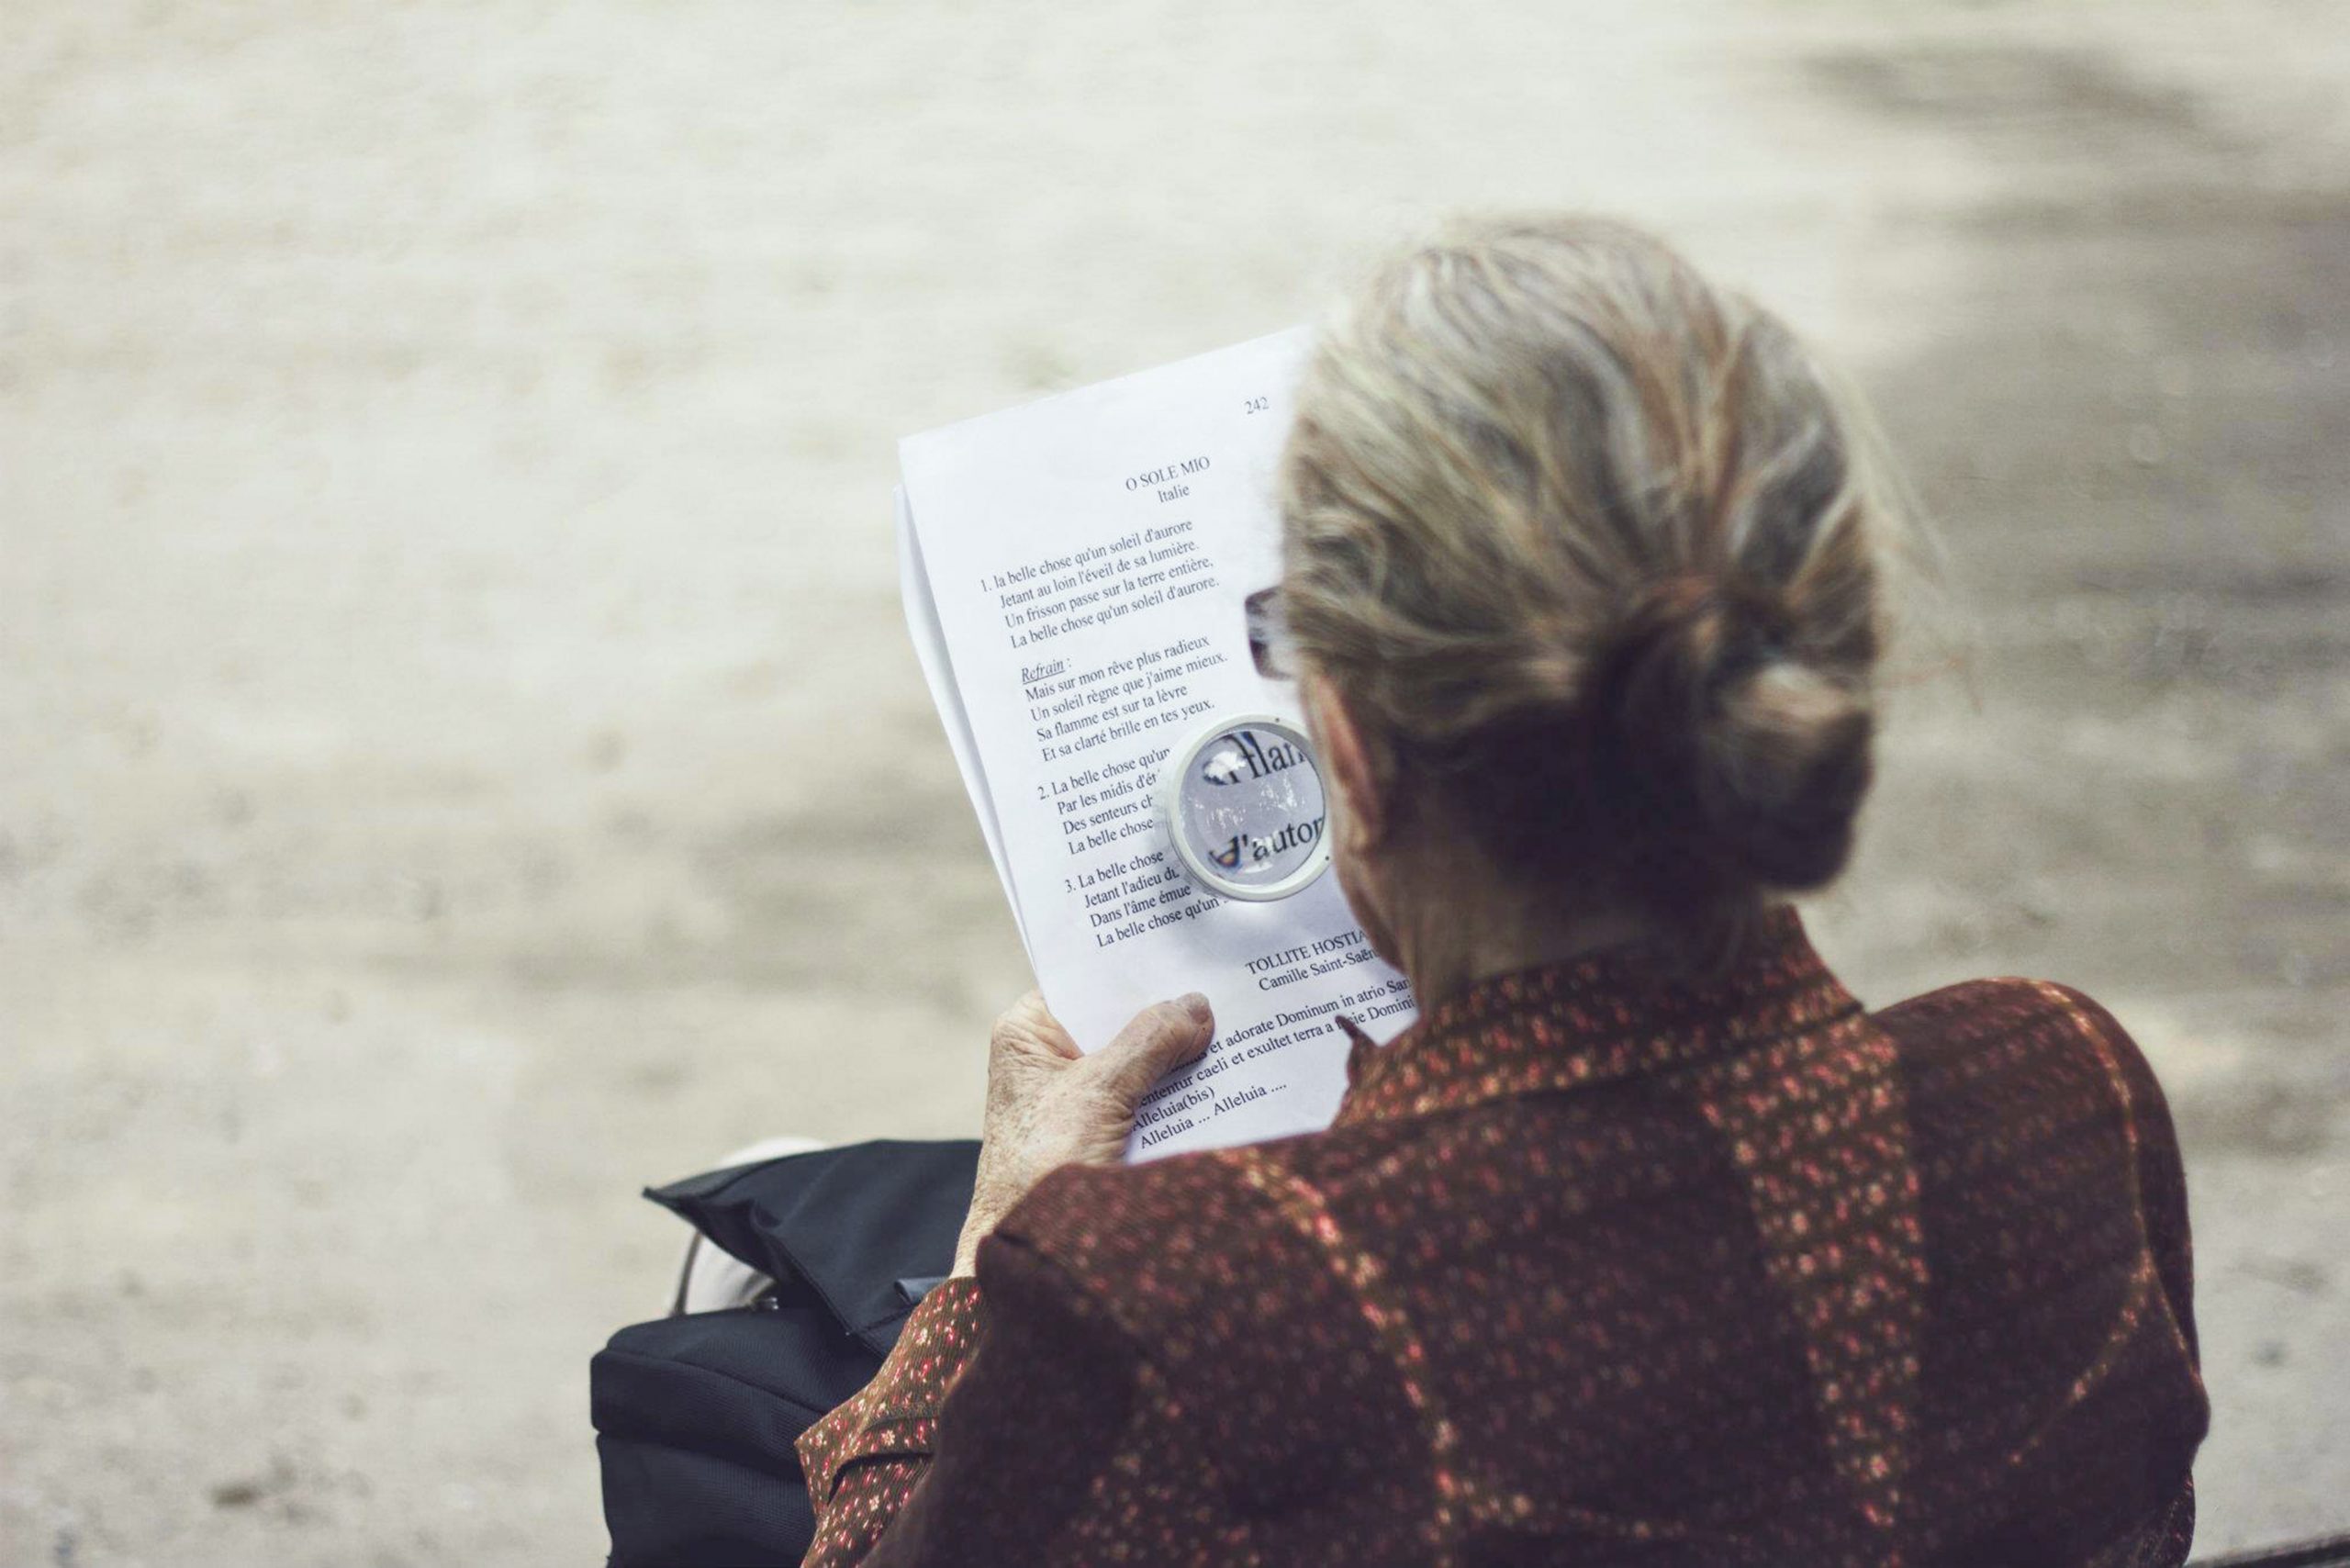 MCI - Was ist das? eine Definition der neurodegenerativen Erkrankung. Auf dem Bild zu sehen ist eine ältere Dame, die mit einer Leselupe ein Gedicht liest.